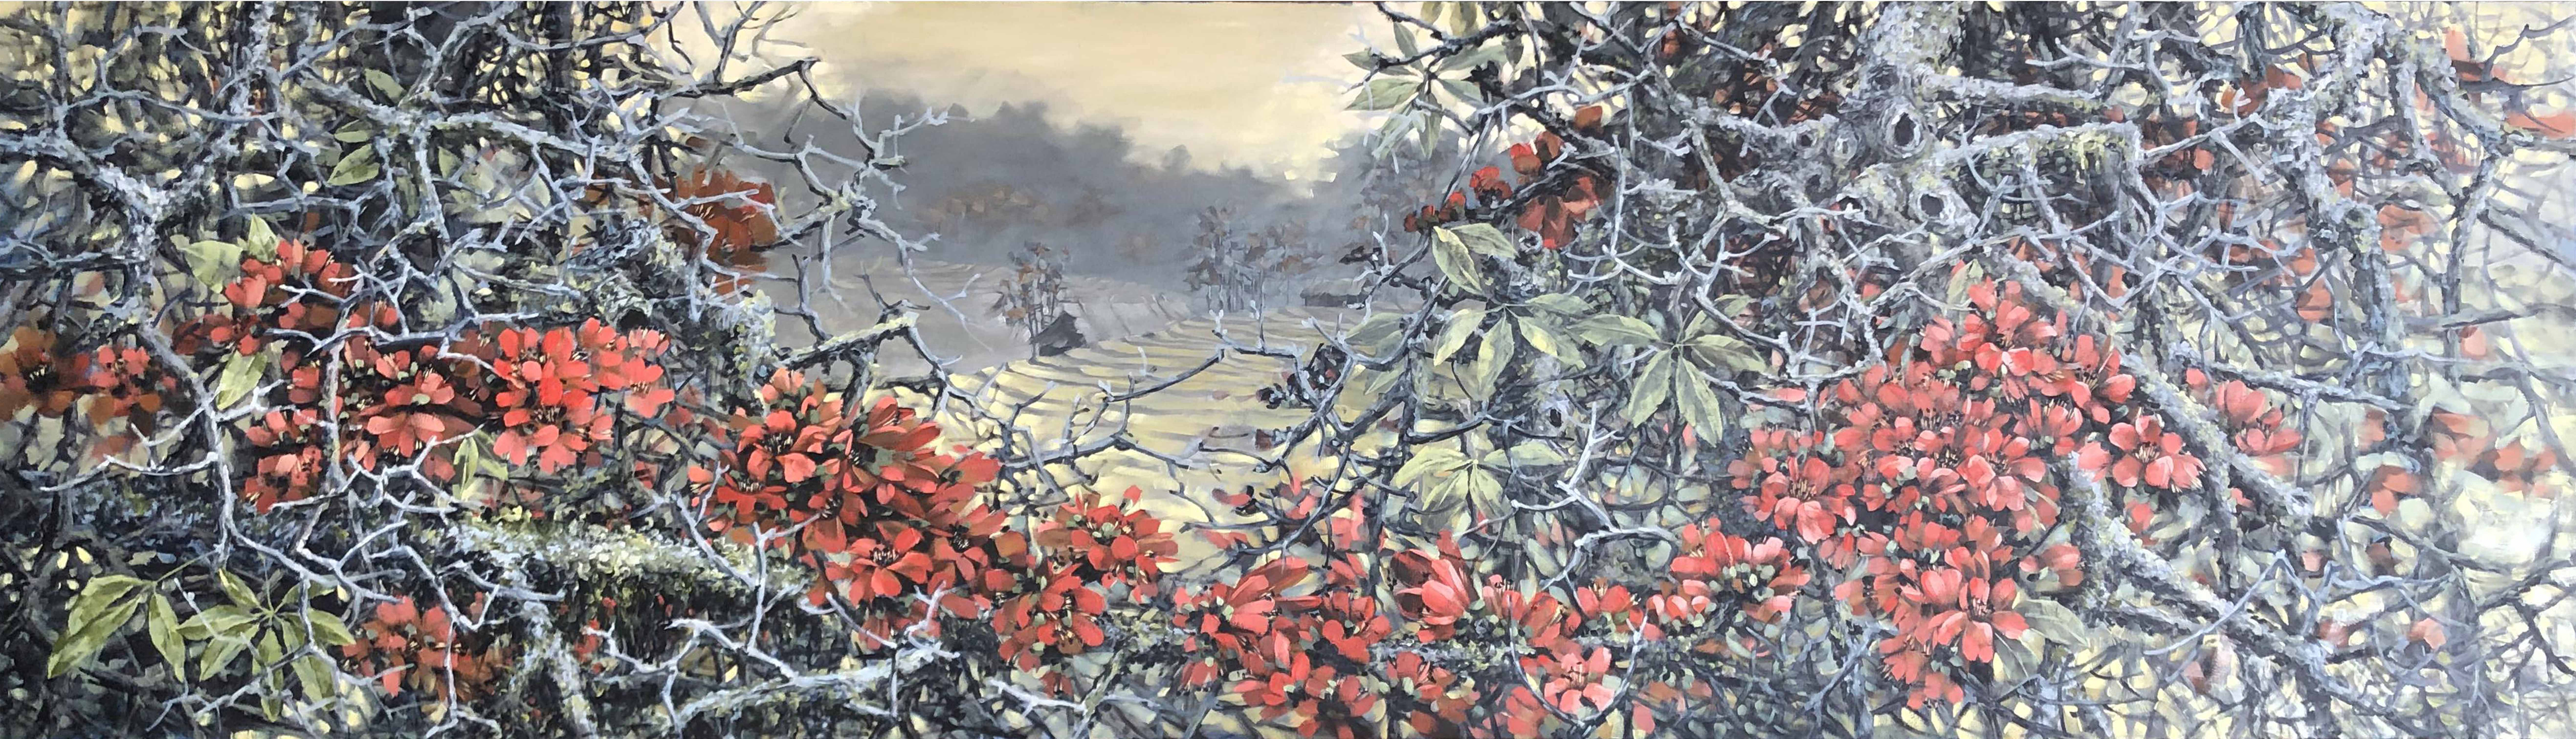 Những góc nhìn khác về Tây Bắc qua tranh sơn dầu phong cảnh của hoạ sĩ Lê Ngoc Hải  1